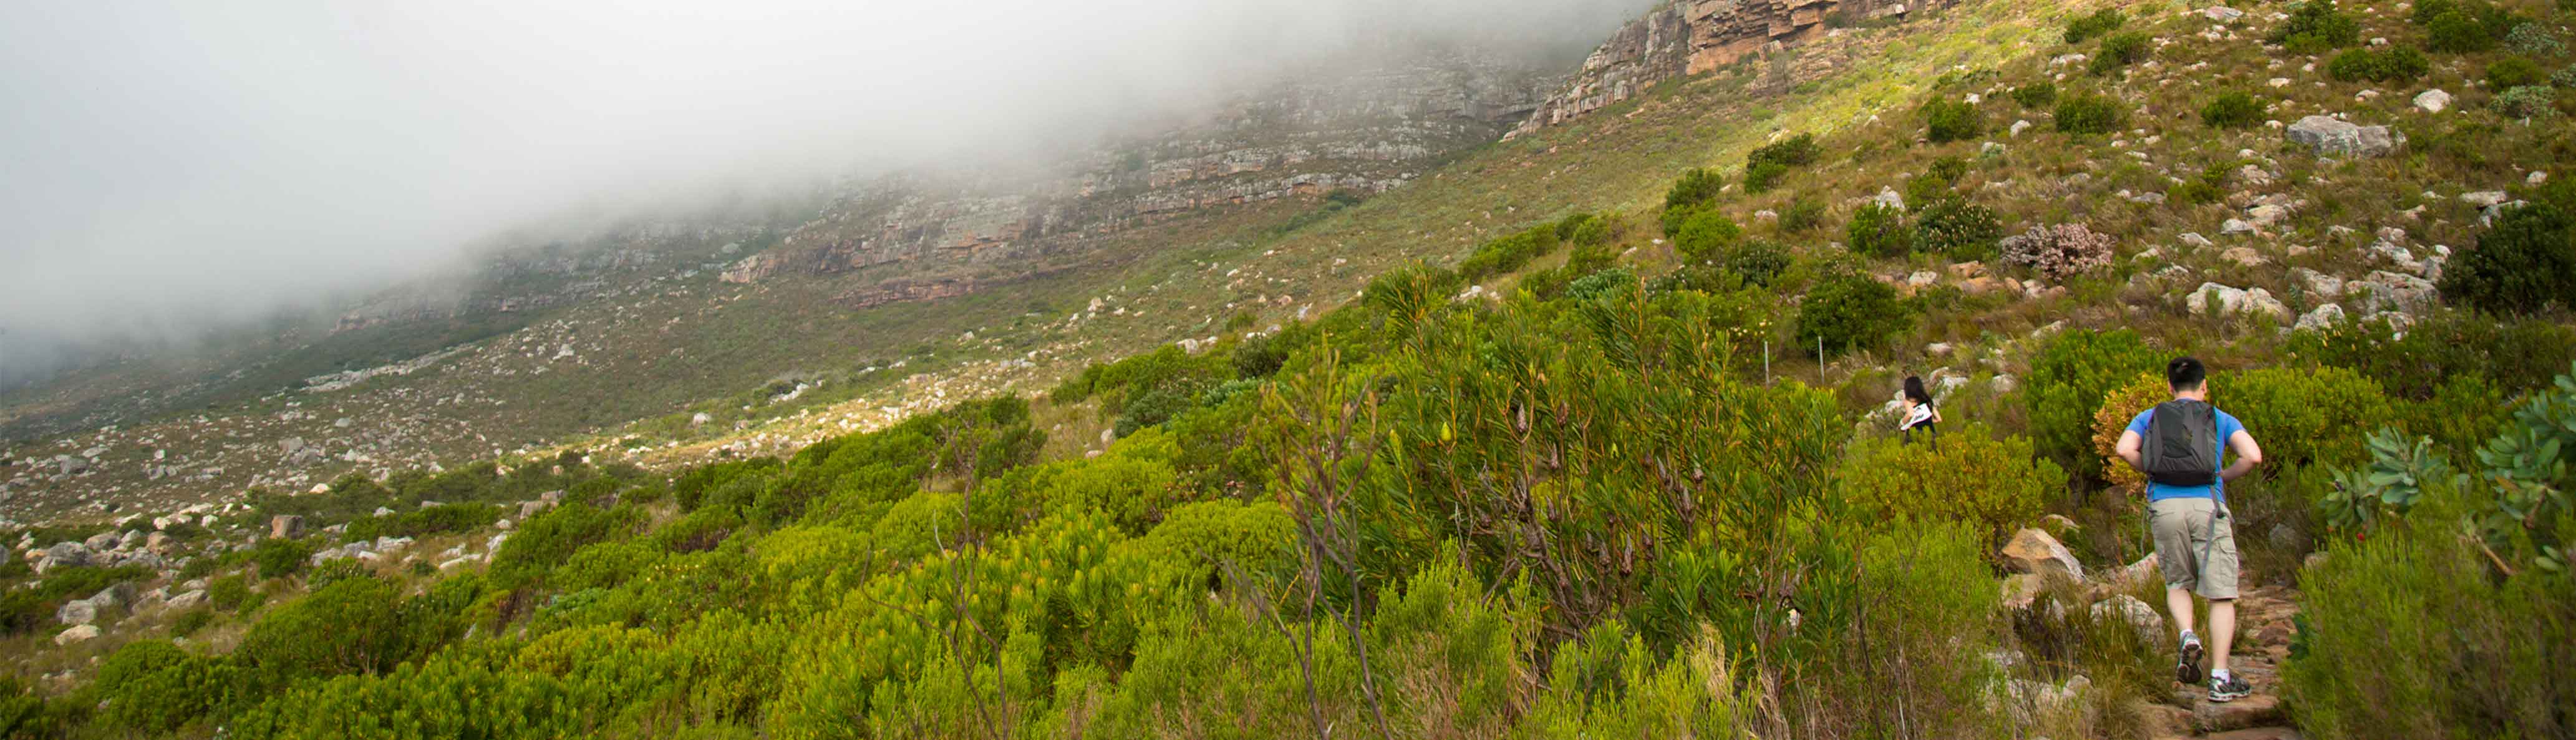 South Africa: Hike & Bike